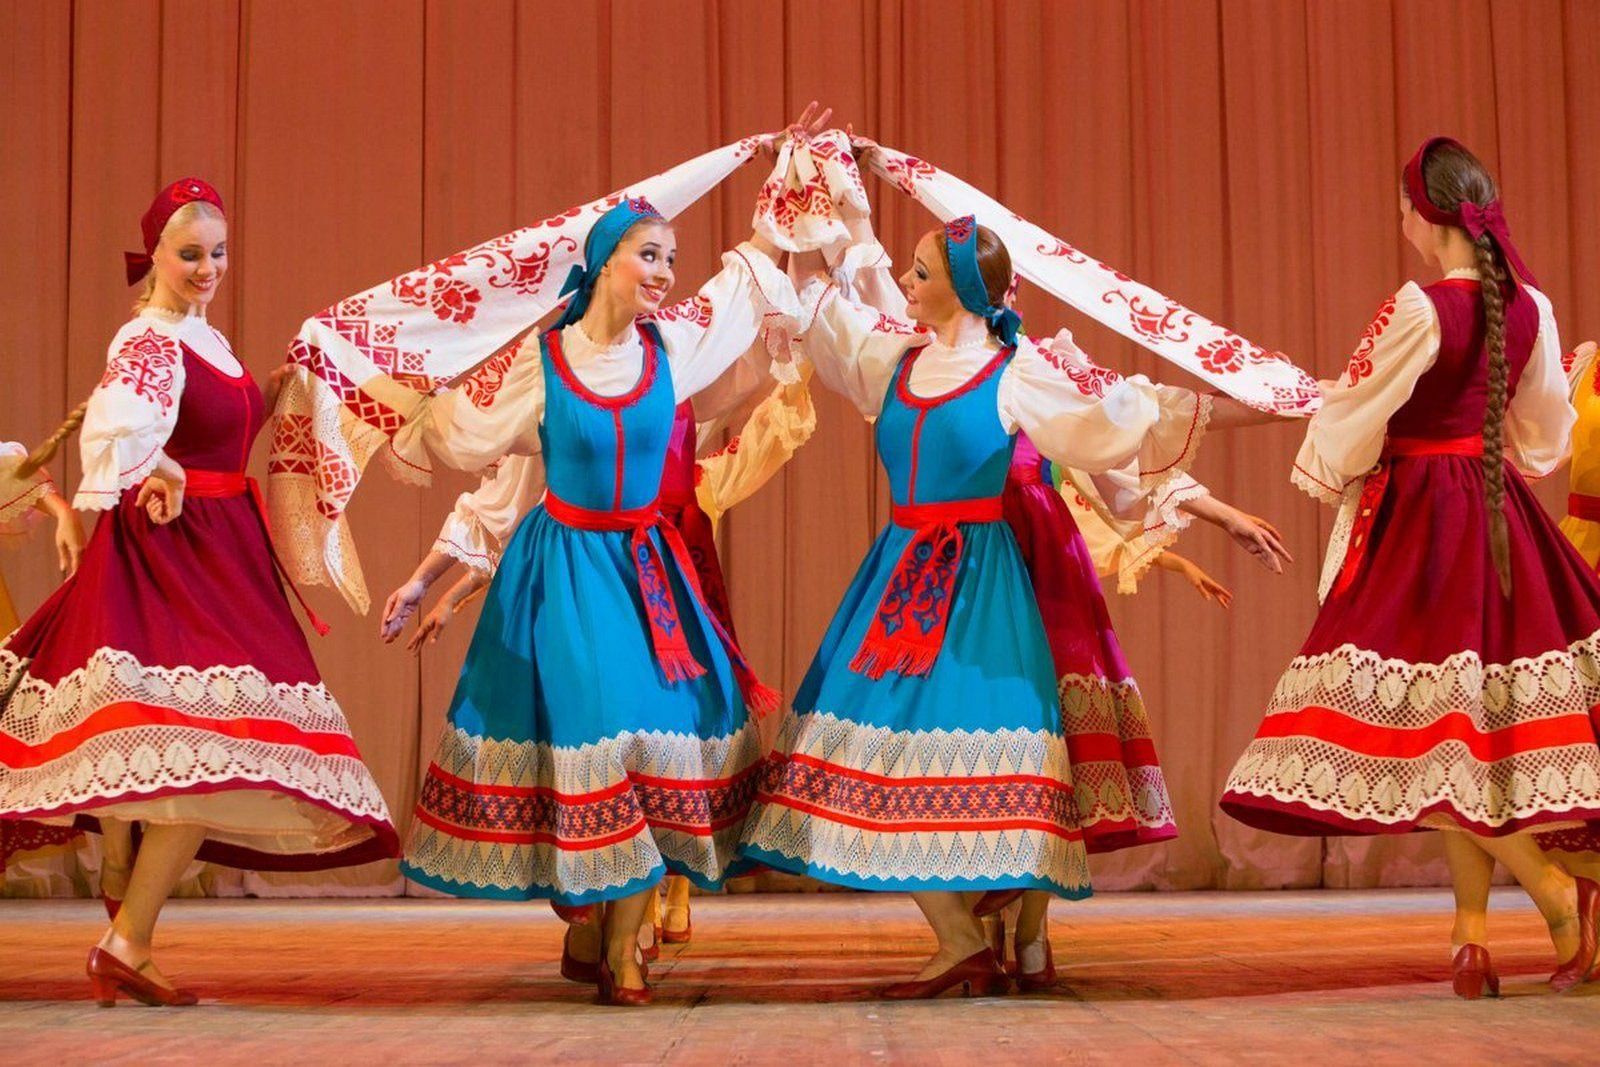 Изображение русских народных танцовщиков в народной одежде, исполняющих запоминающиеся фигуры в неподдельном восторге